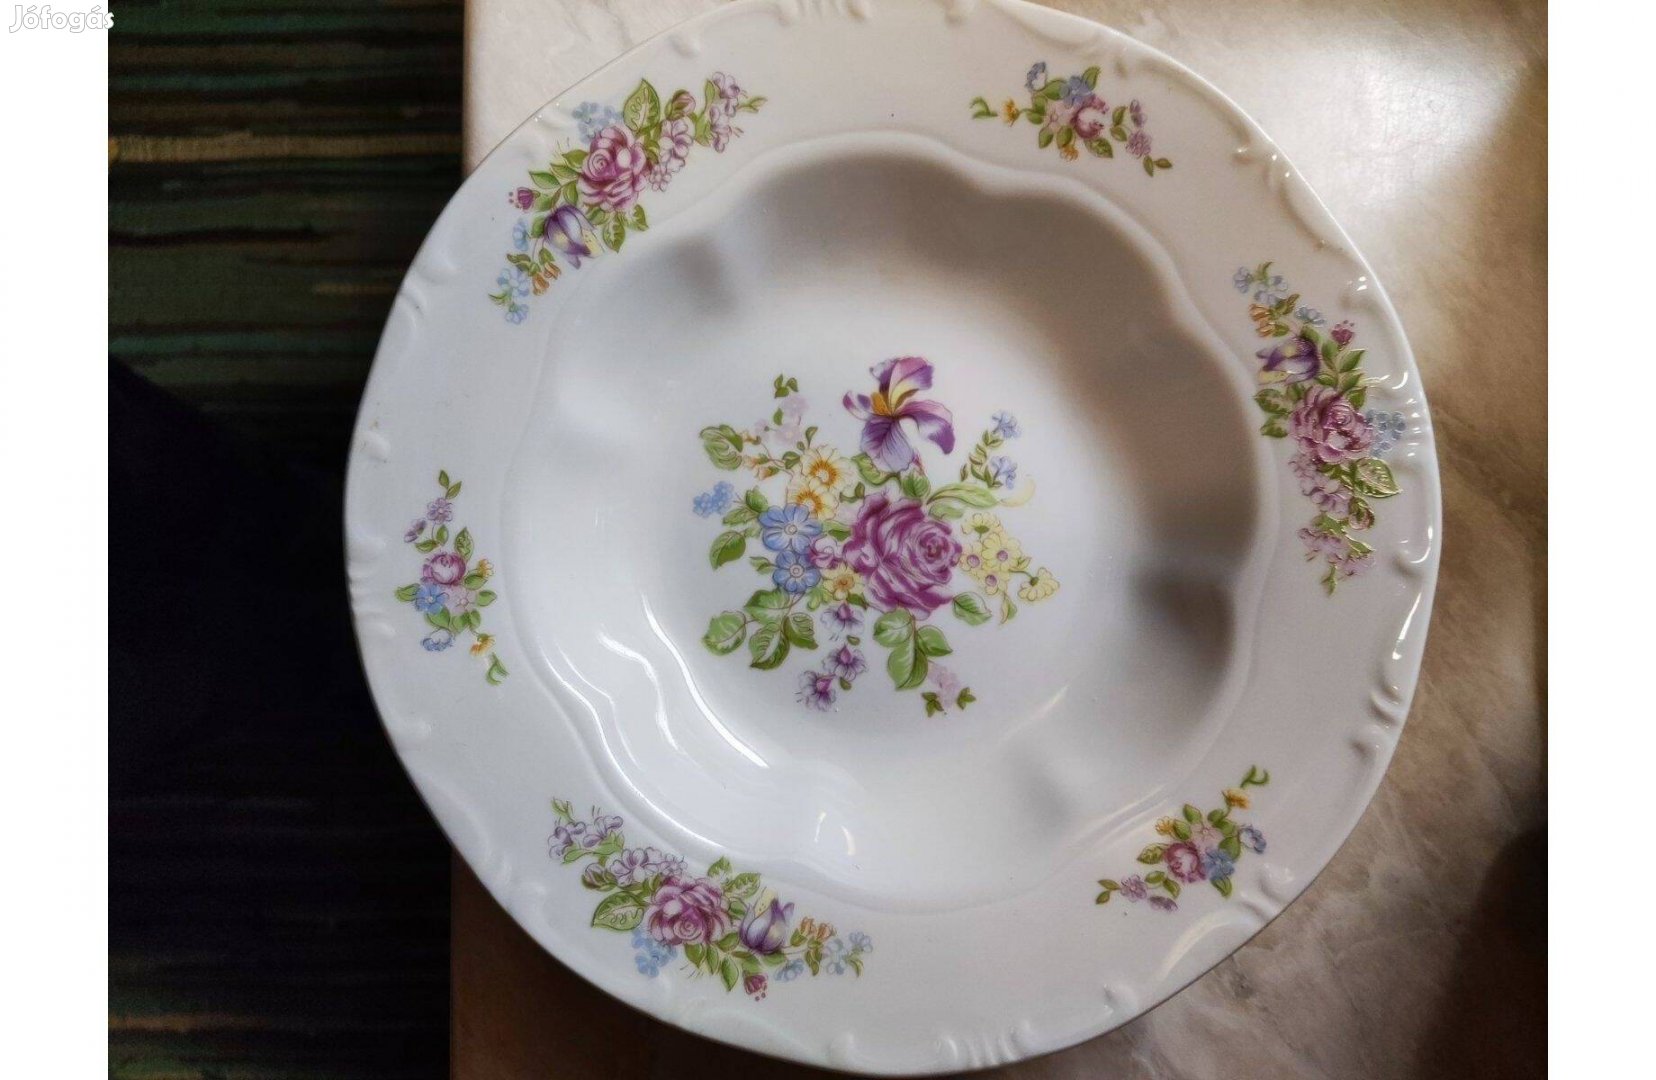 Keresek: Pótlásra Zsolnay tányér pünkösdi rózsa motívummal festett